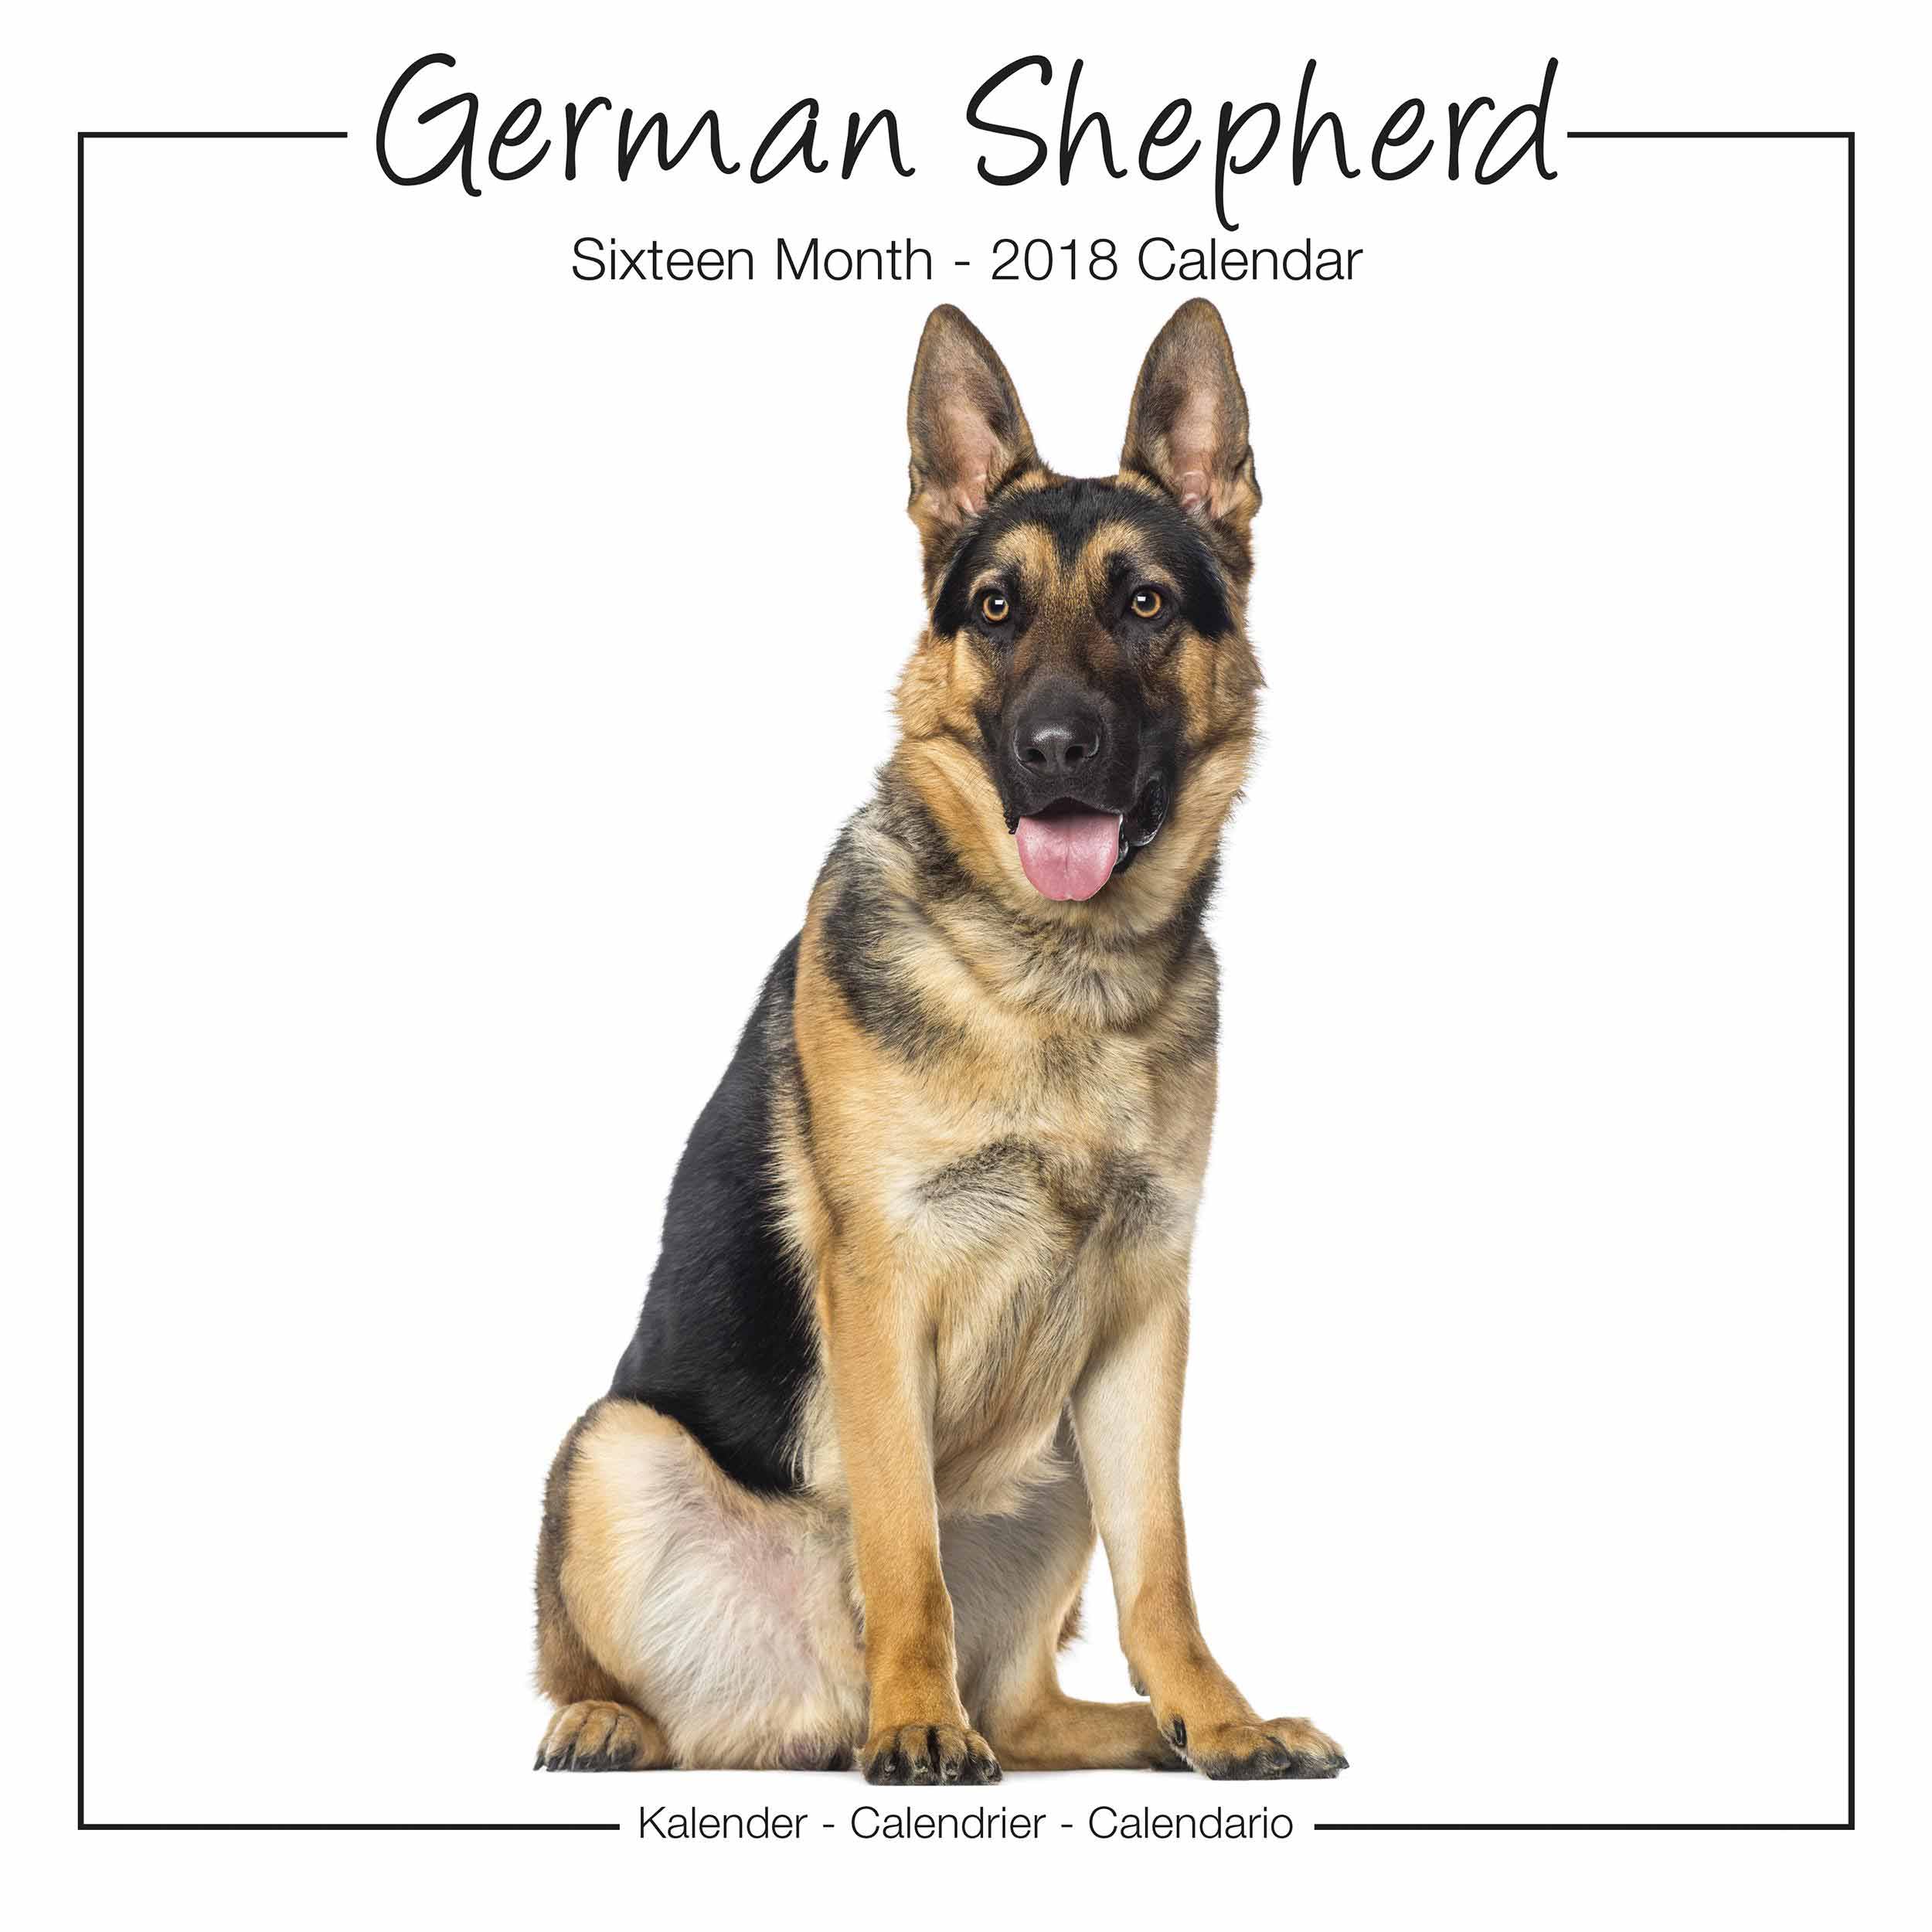 German Shepherd Studio Calendar 2018 - Calendar Club UK